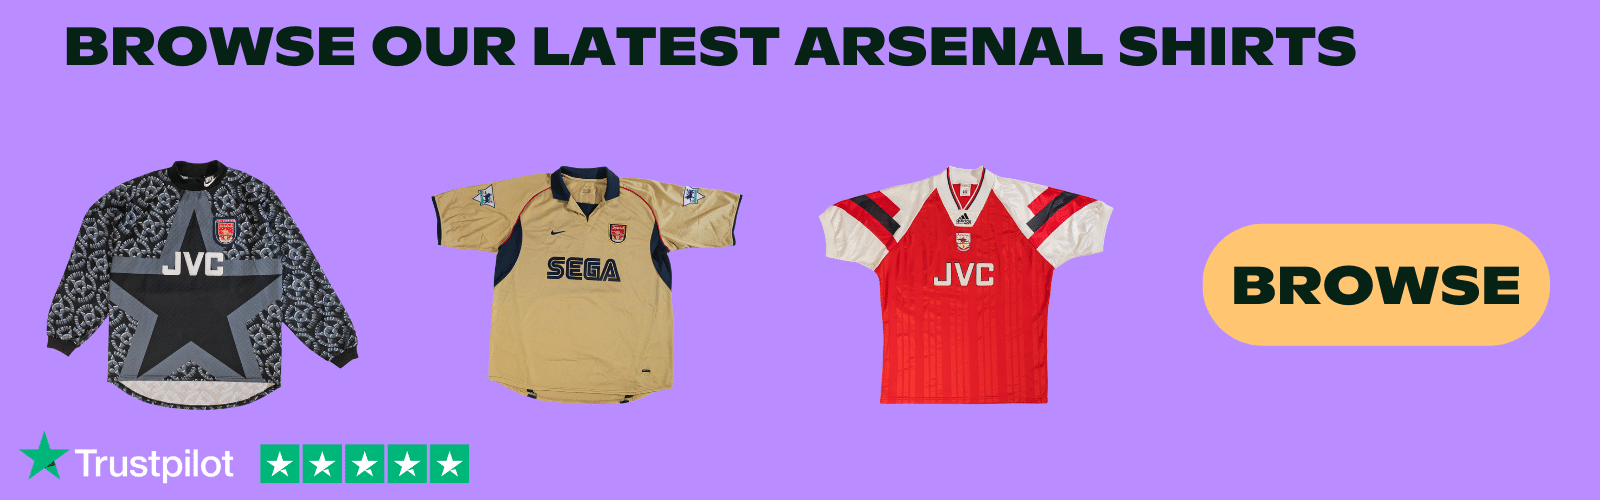 Arsenal shirts